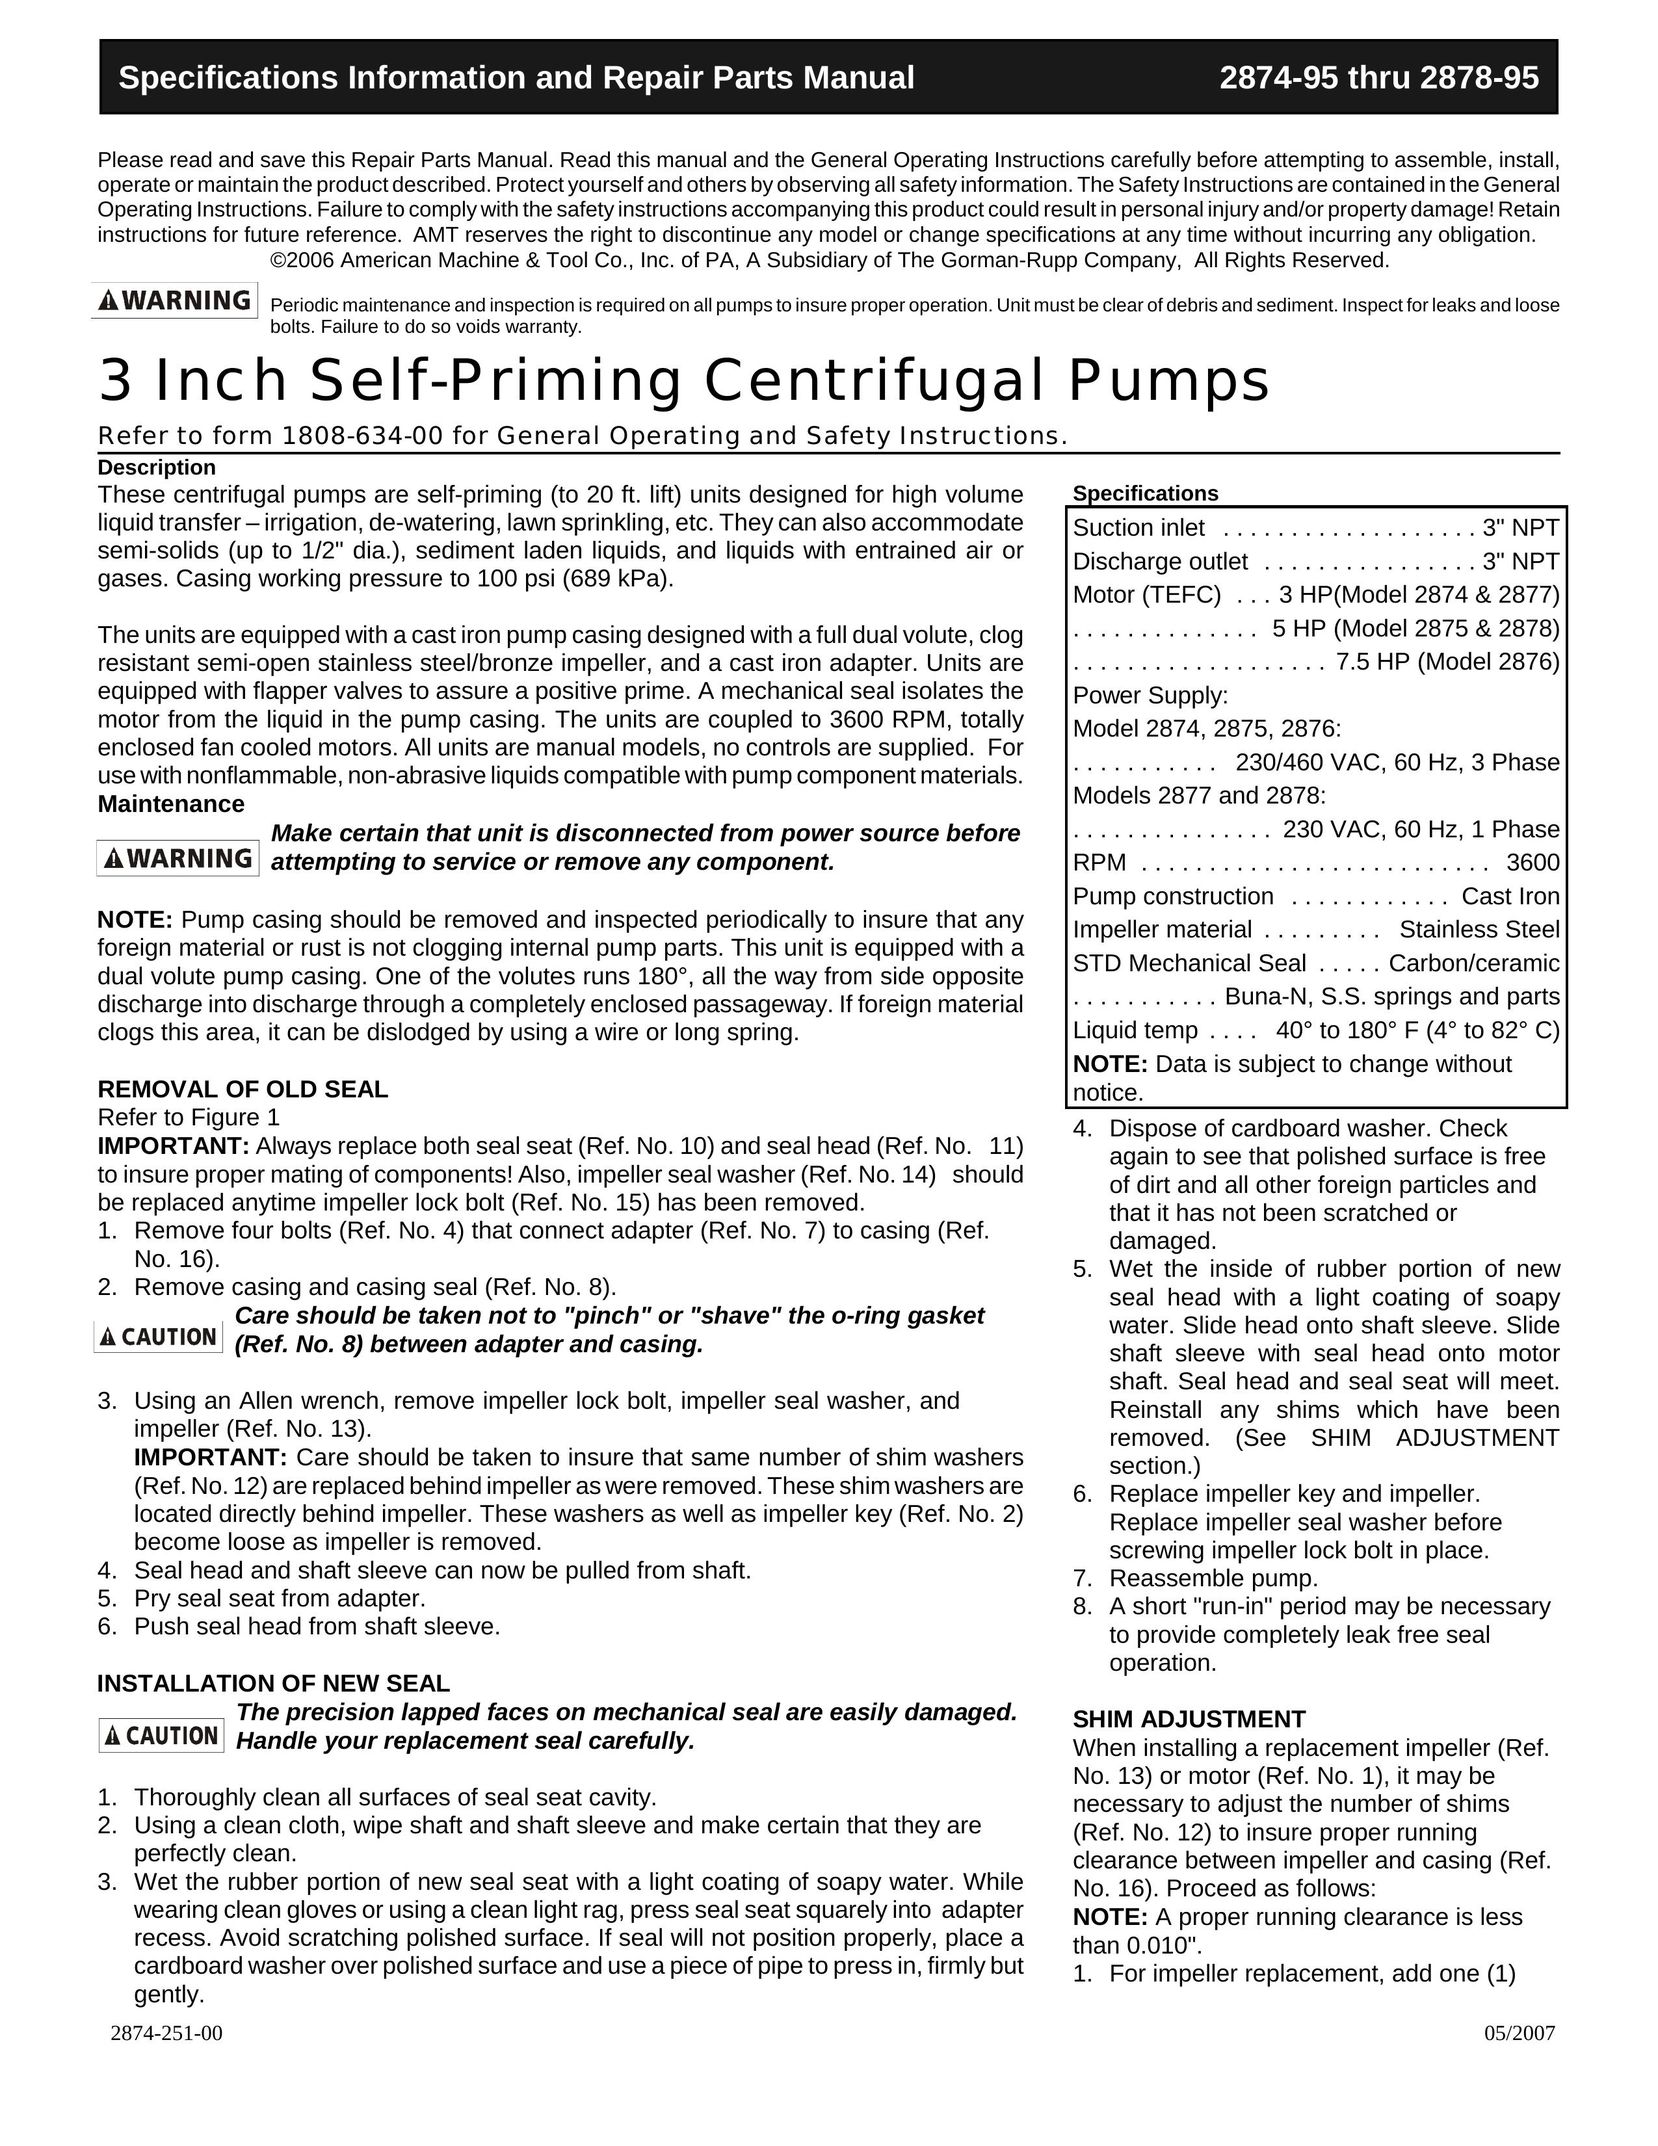 HP (Hewlett-Packard) 2878 Water Pump User Manual